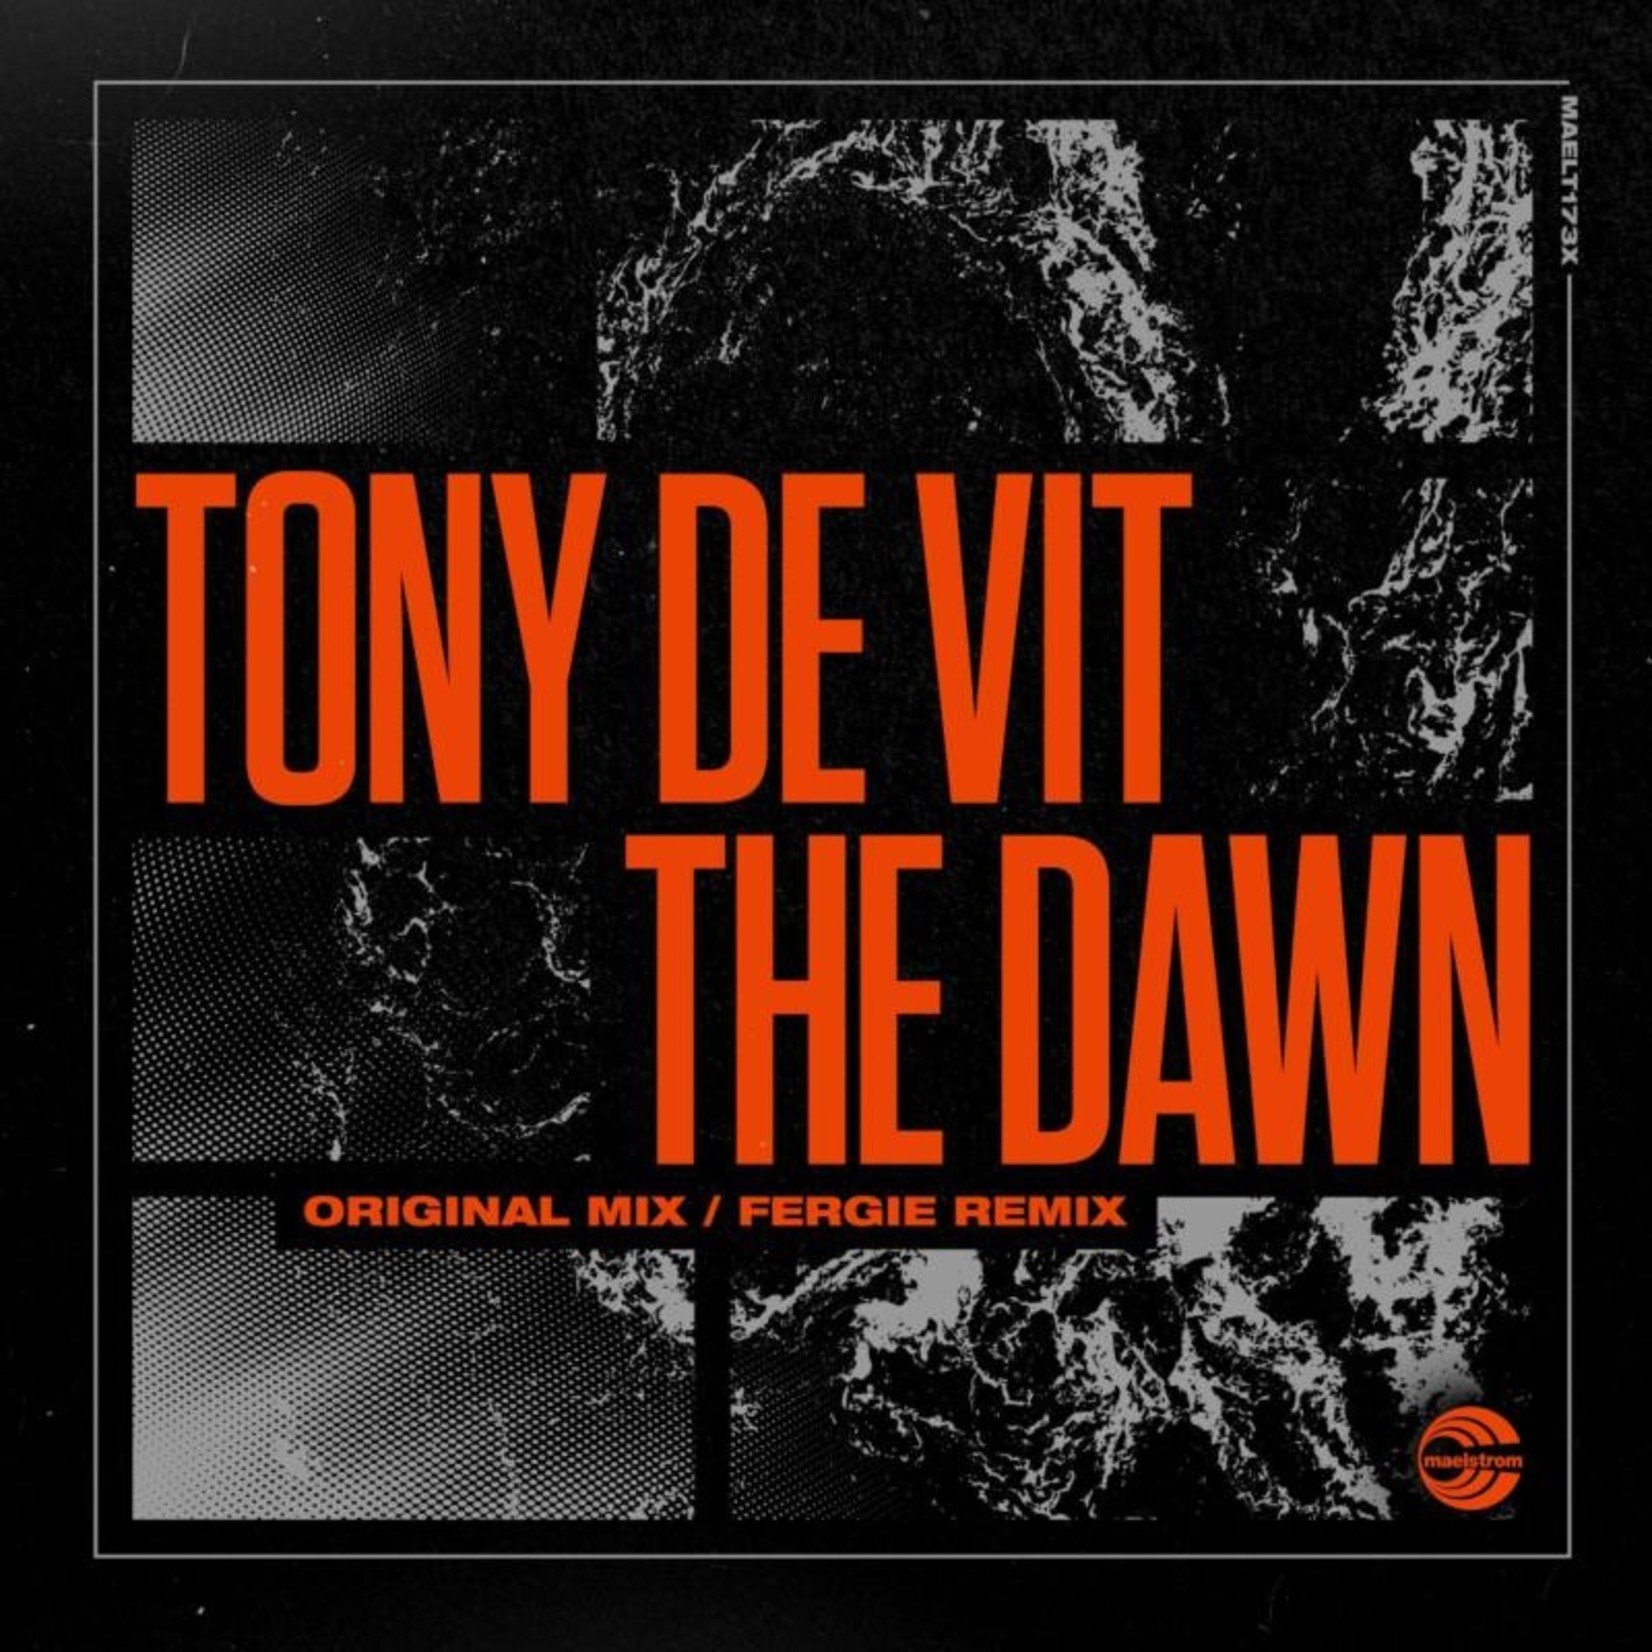 Tony De Vit – The Dawn